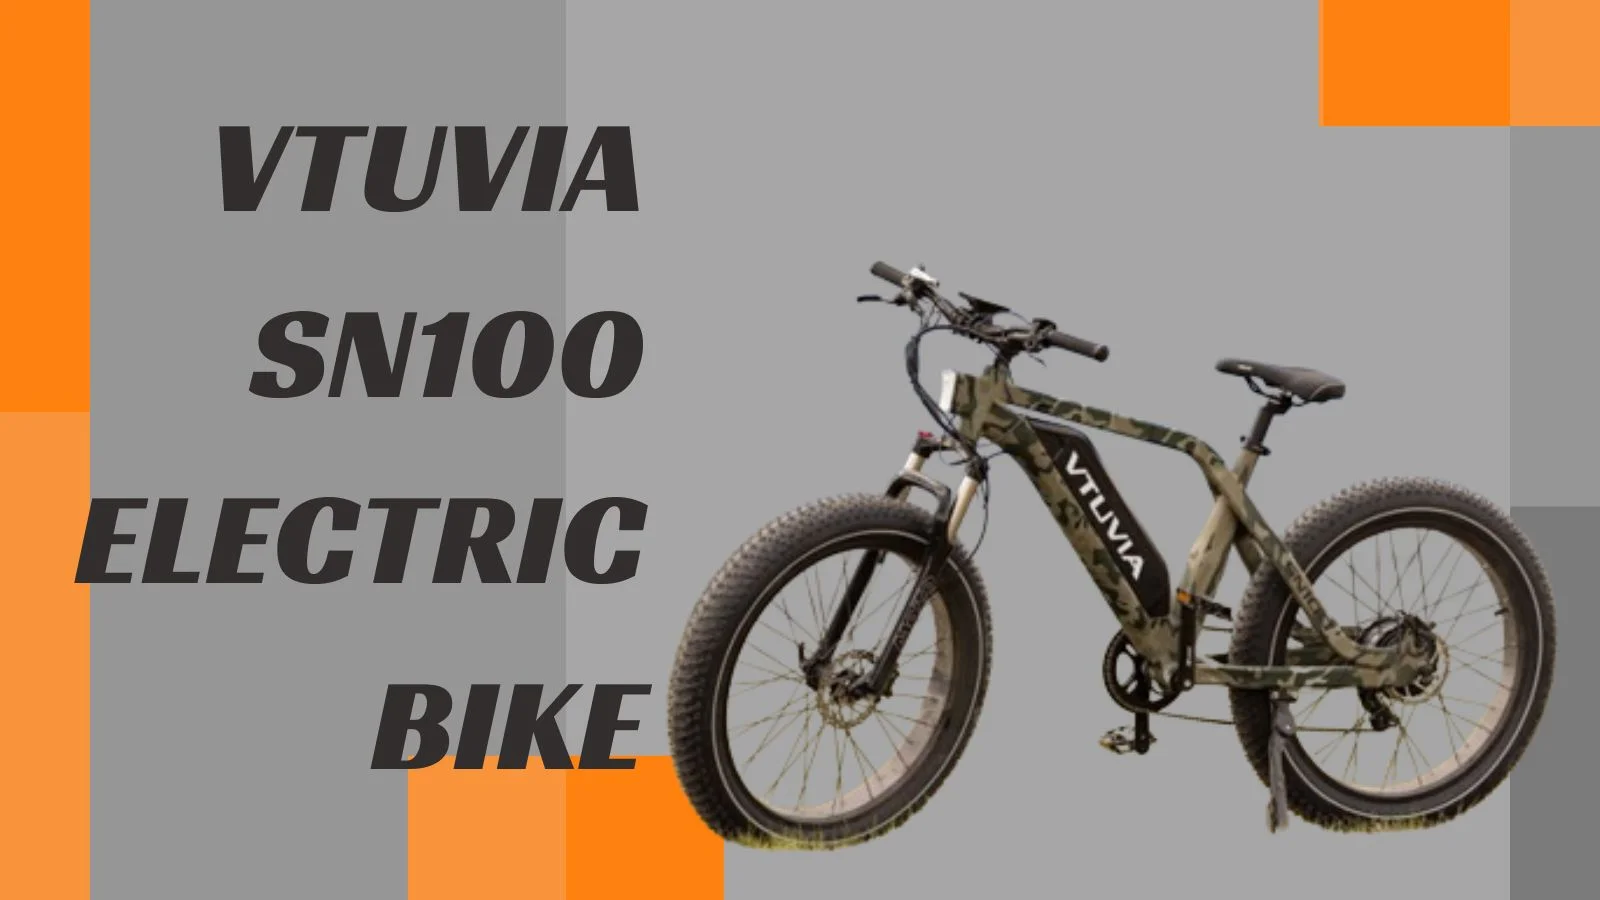 Vtuvia SN100 Electric Bike